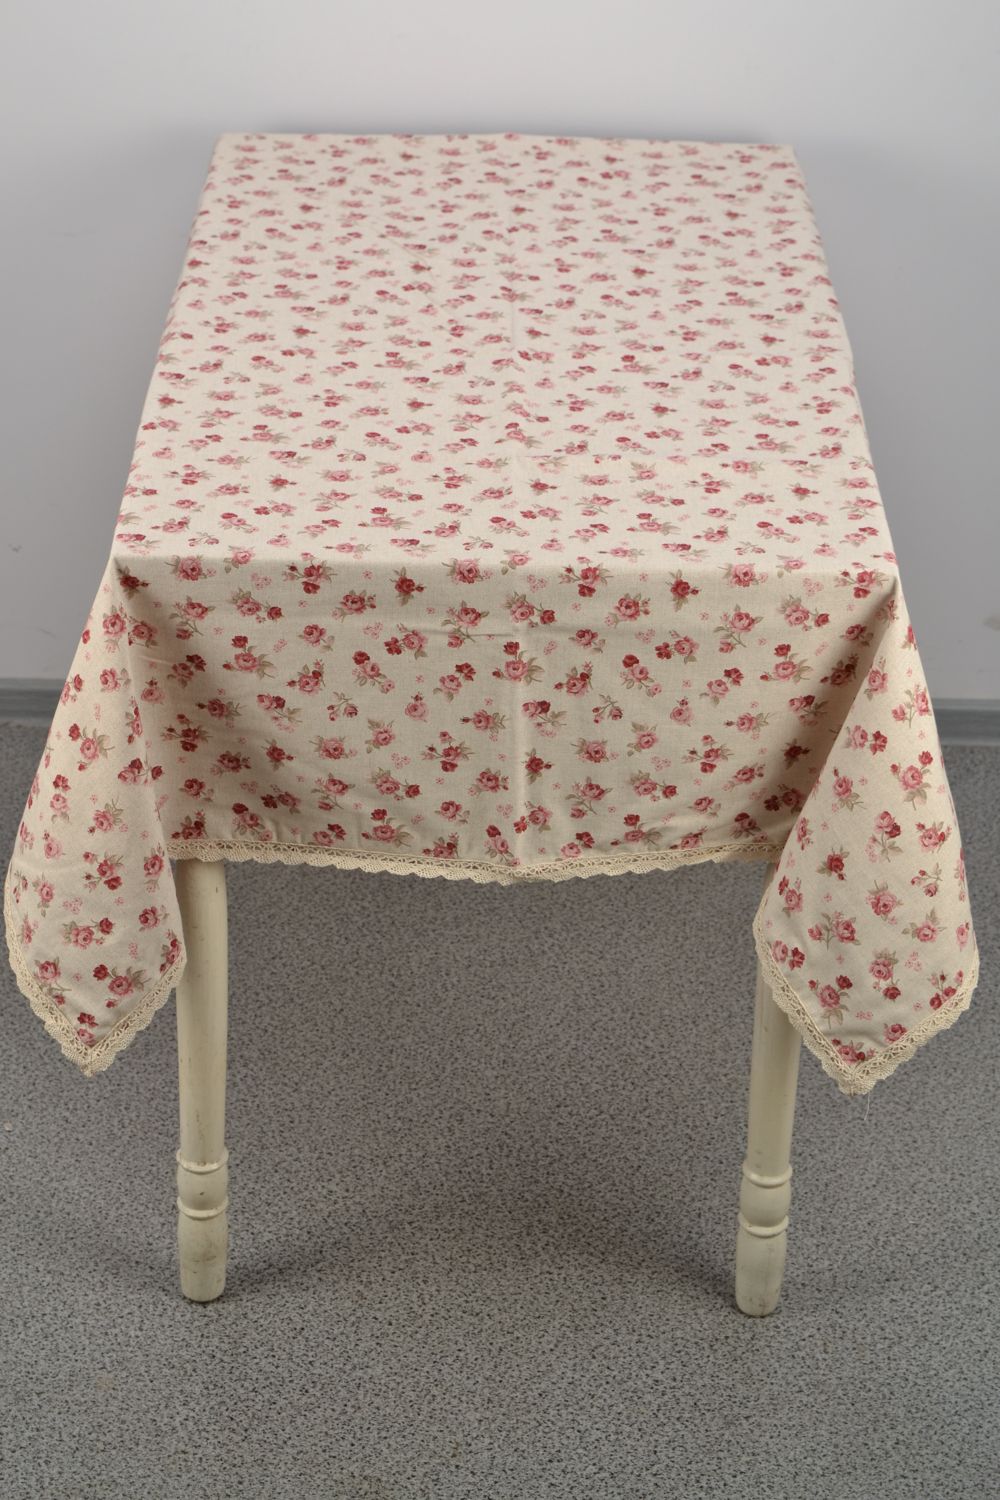 Скатерть на прямоугольный стол из хлопка и полиамида с принтом в розы фото 2